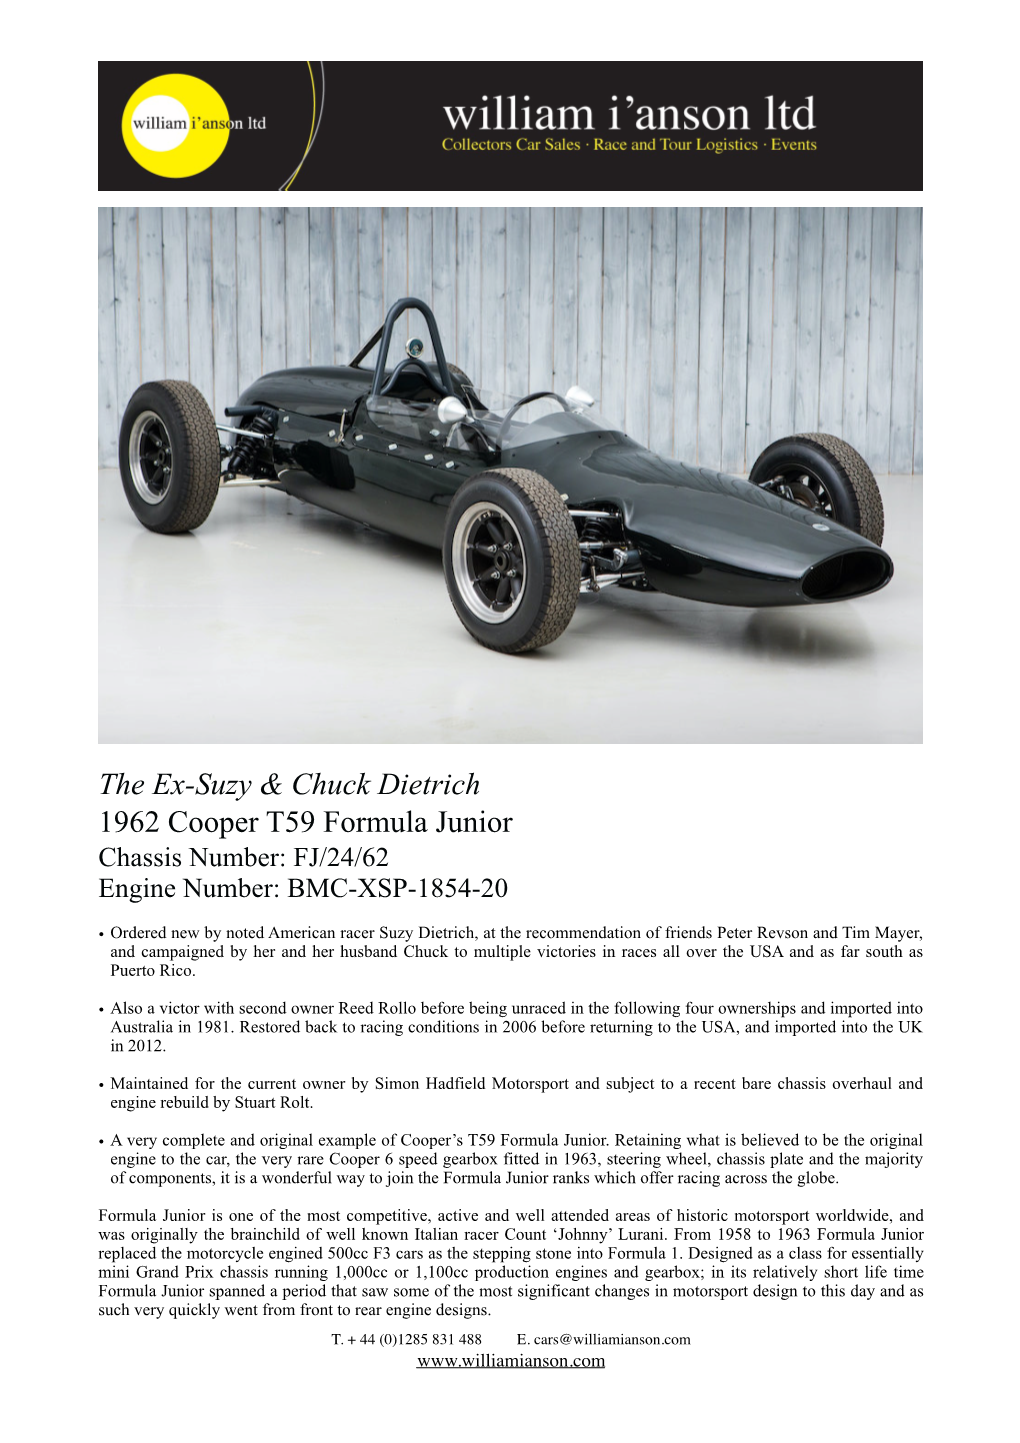 The Ex-Suzy Dietrich 1962 Cooper T59 Formula Junior